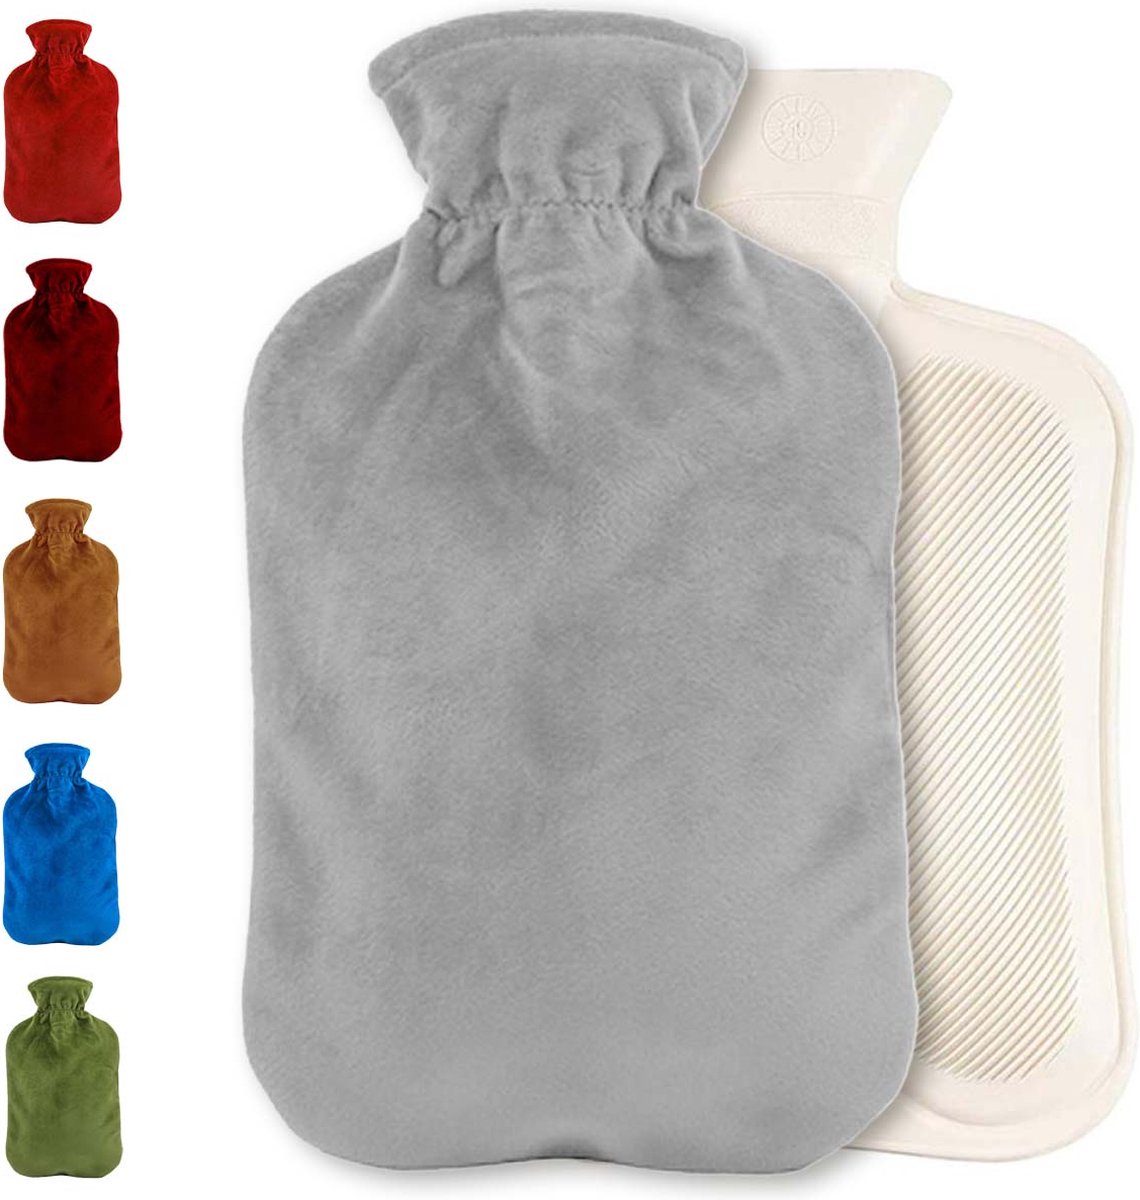 Warmwaterkruik met fleece hoes | Warmtekruik | Kruik | Warmwaterkruik | Rubber | 2 liter | Grijs | Inclusief fleece hoes | Able & Borret